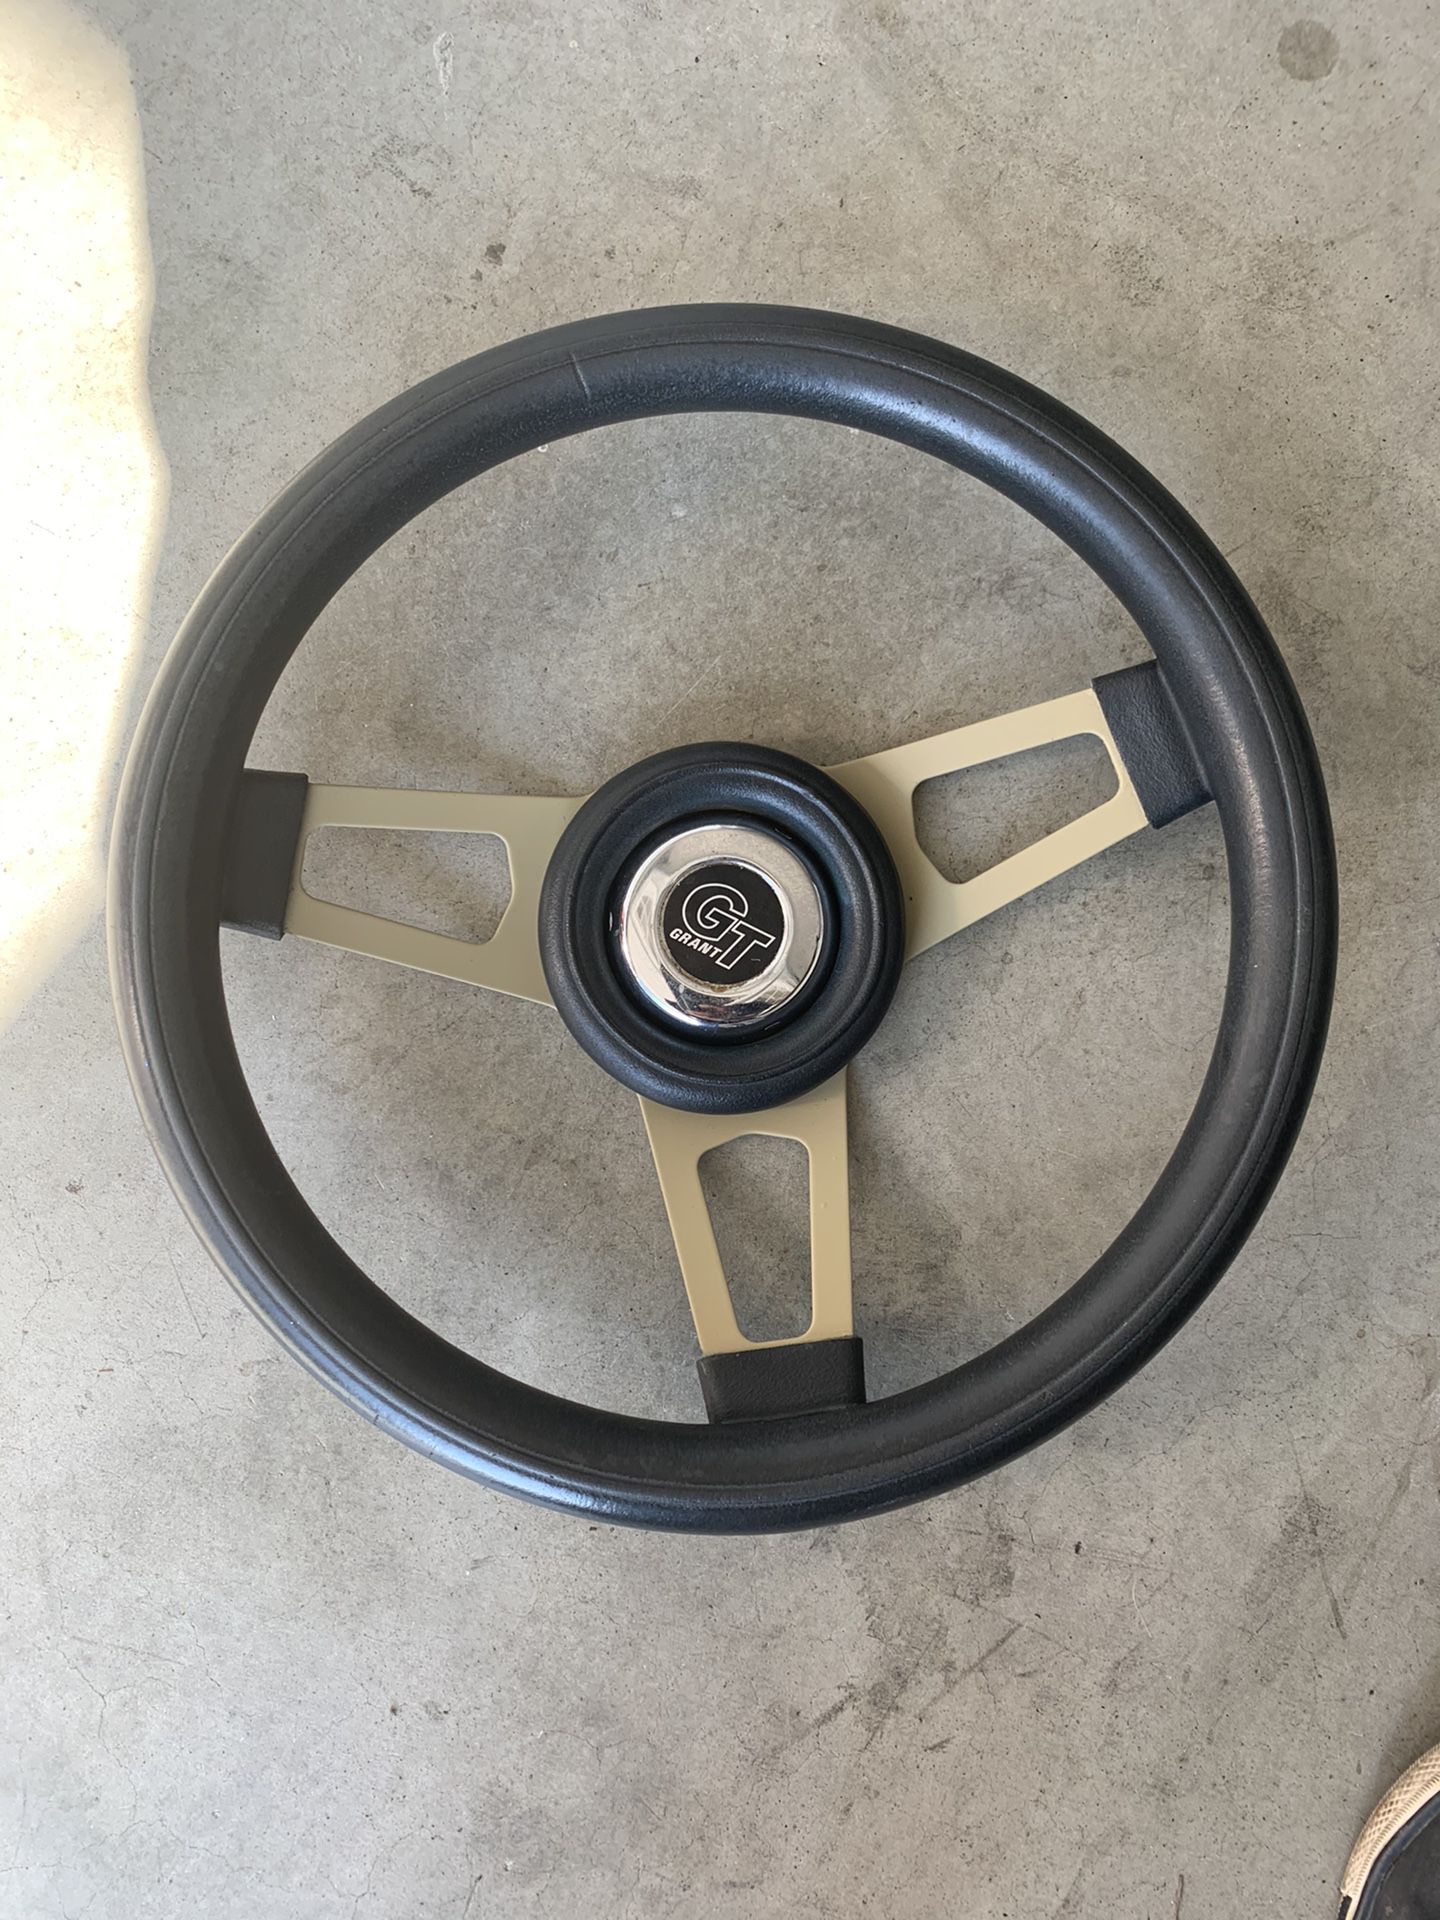 GT steering wheel